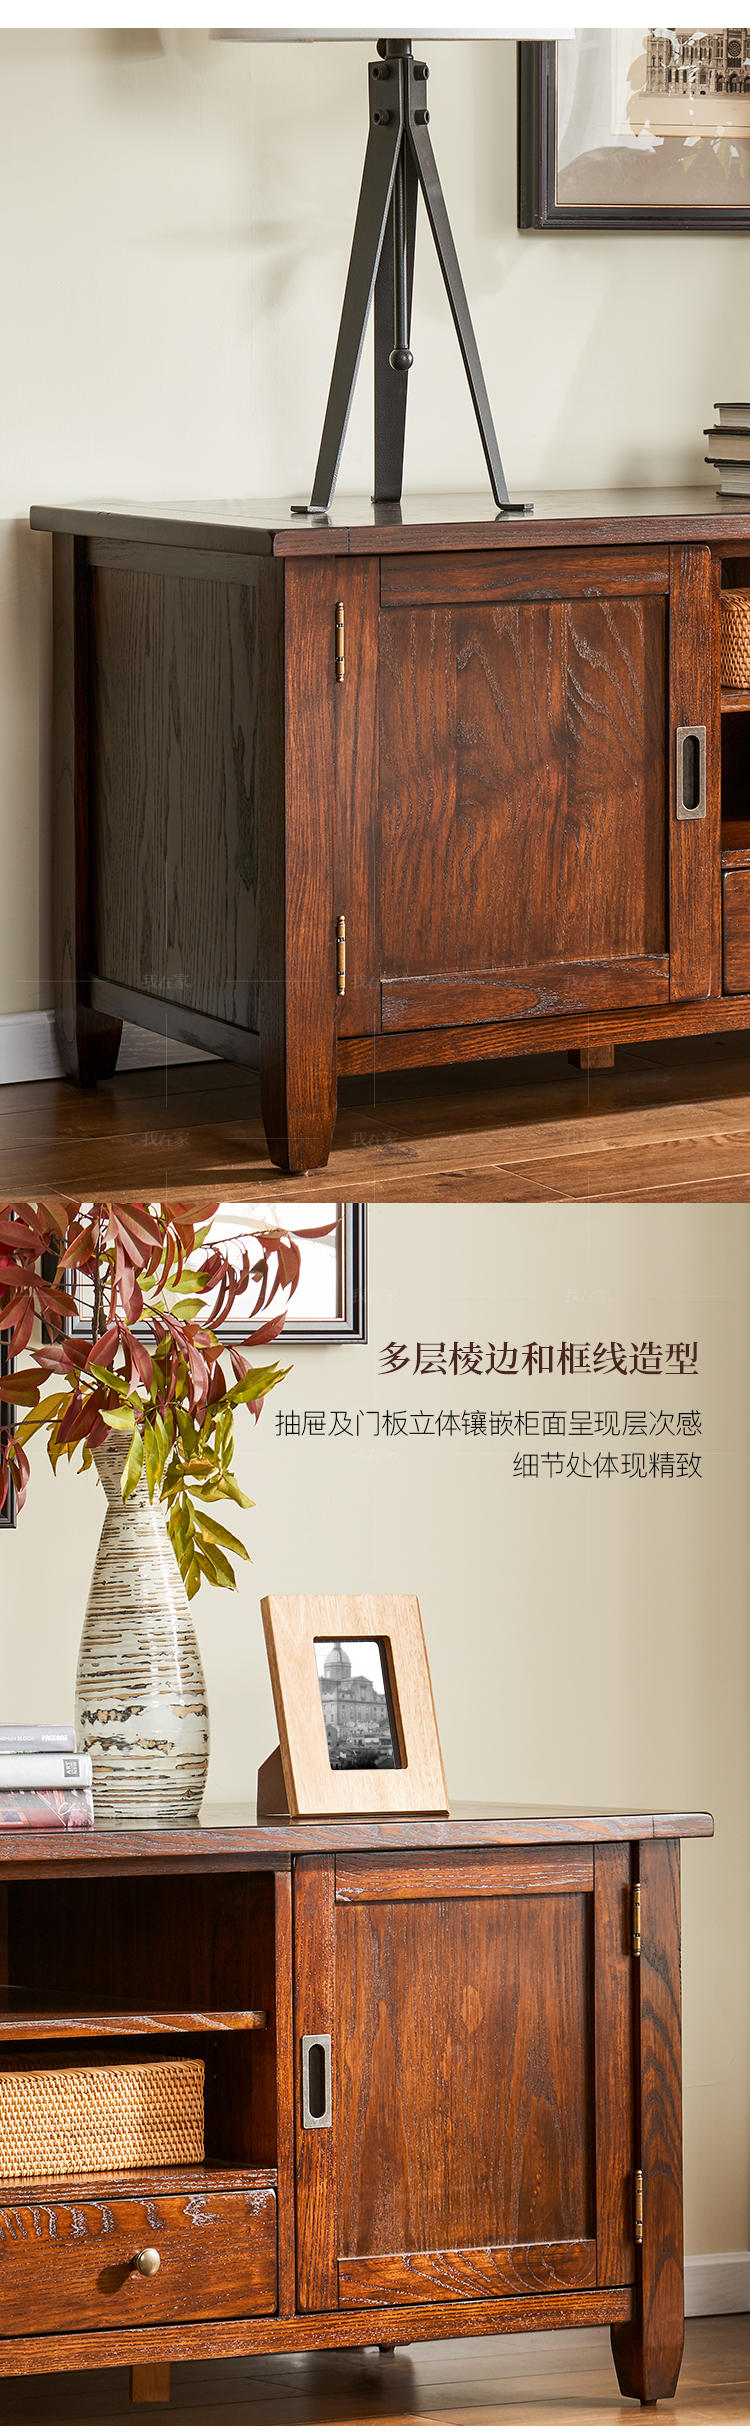 简约美式风格福克斯电视柜的家具详细介绍